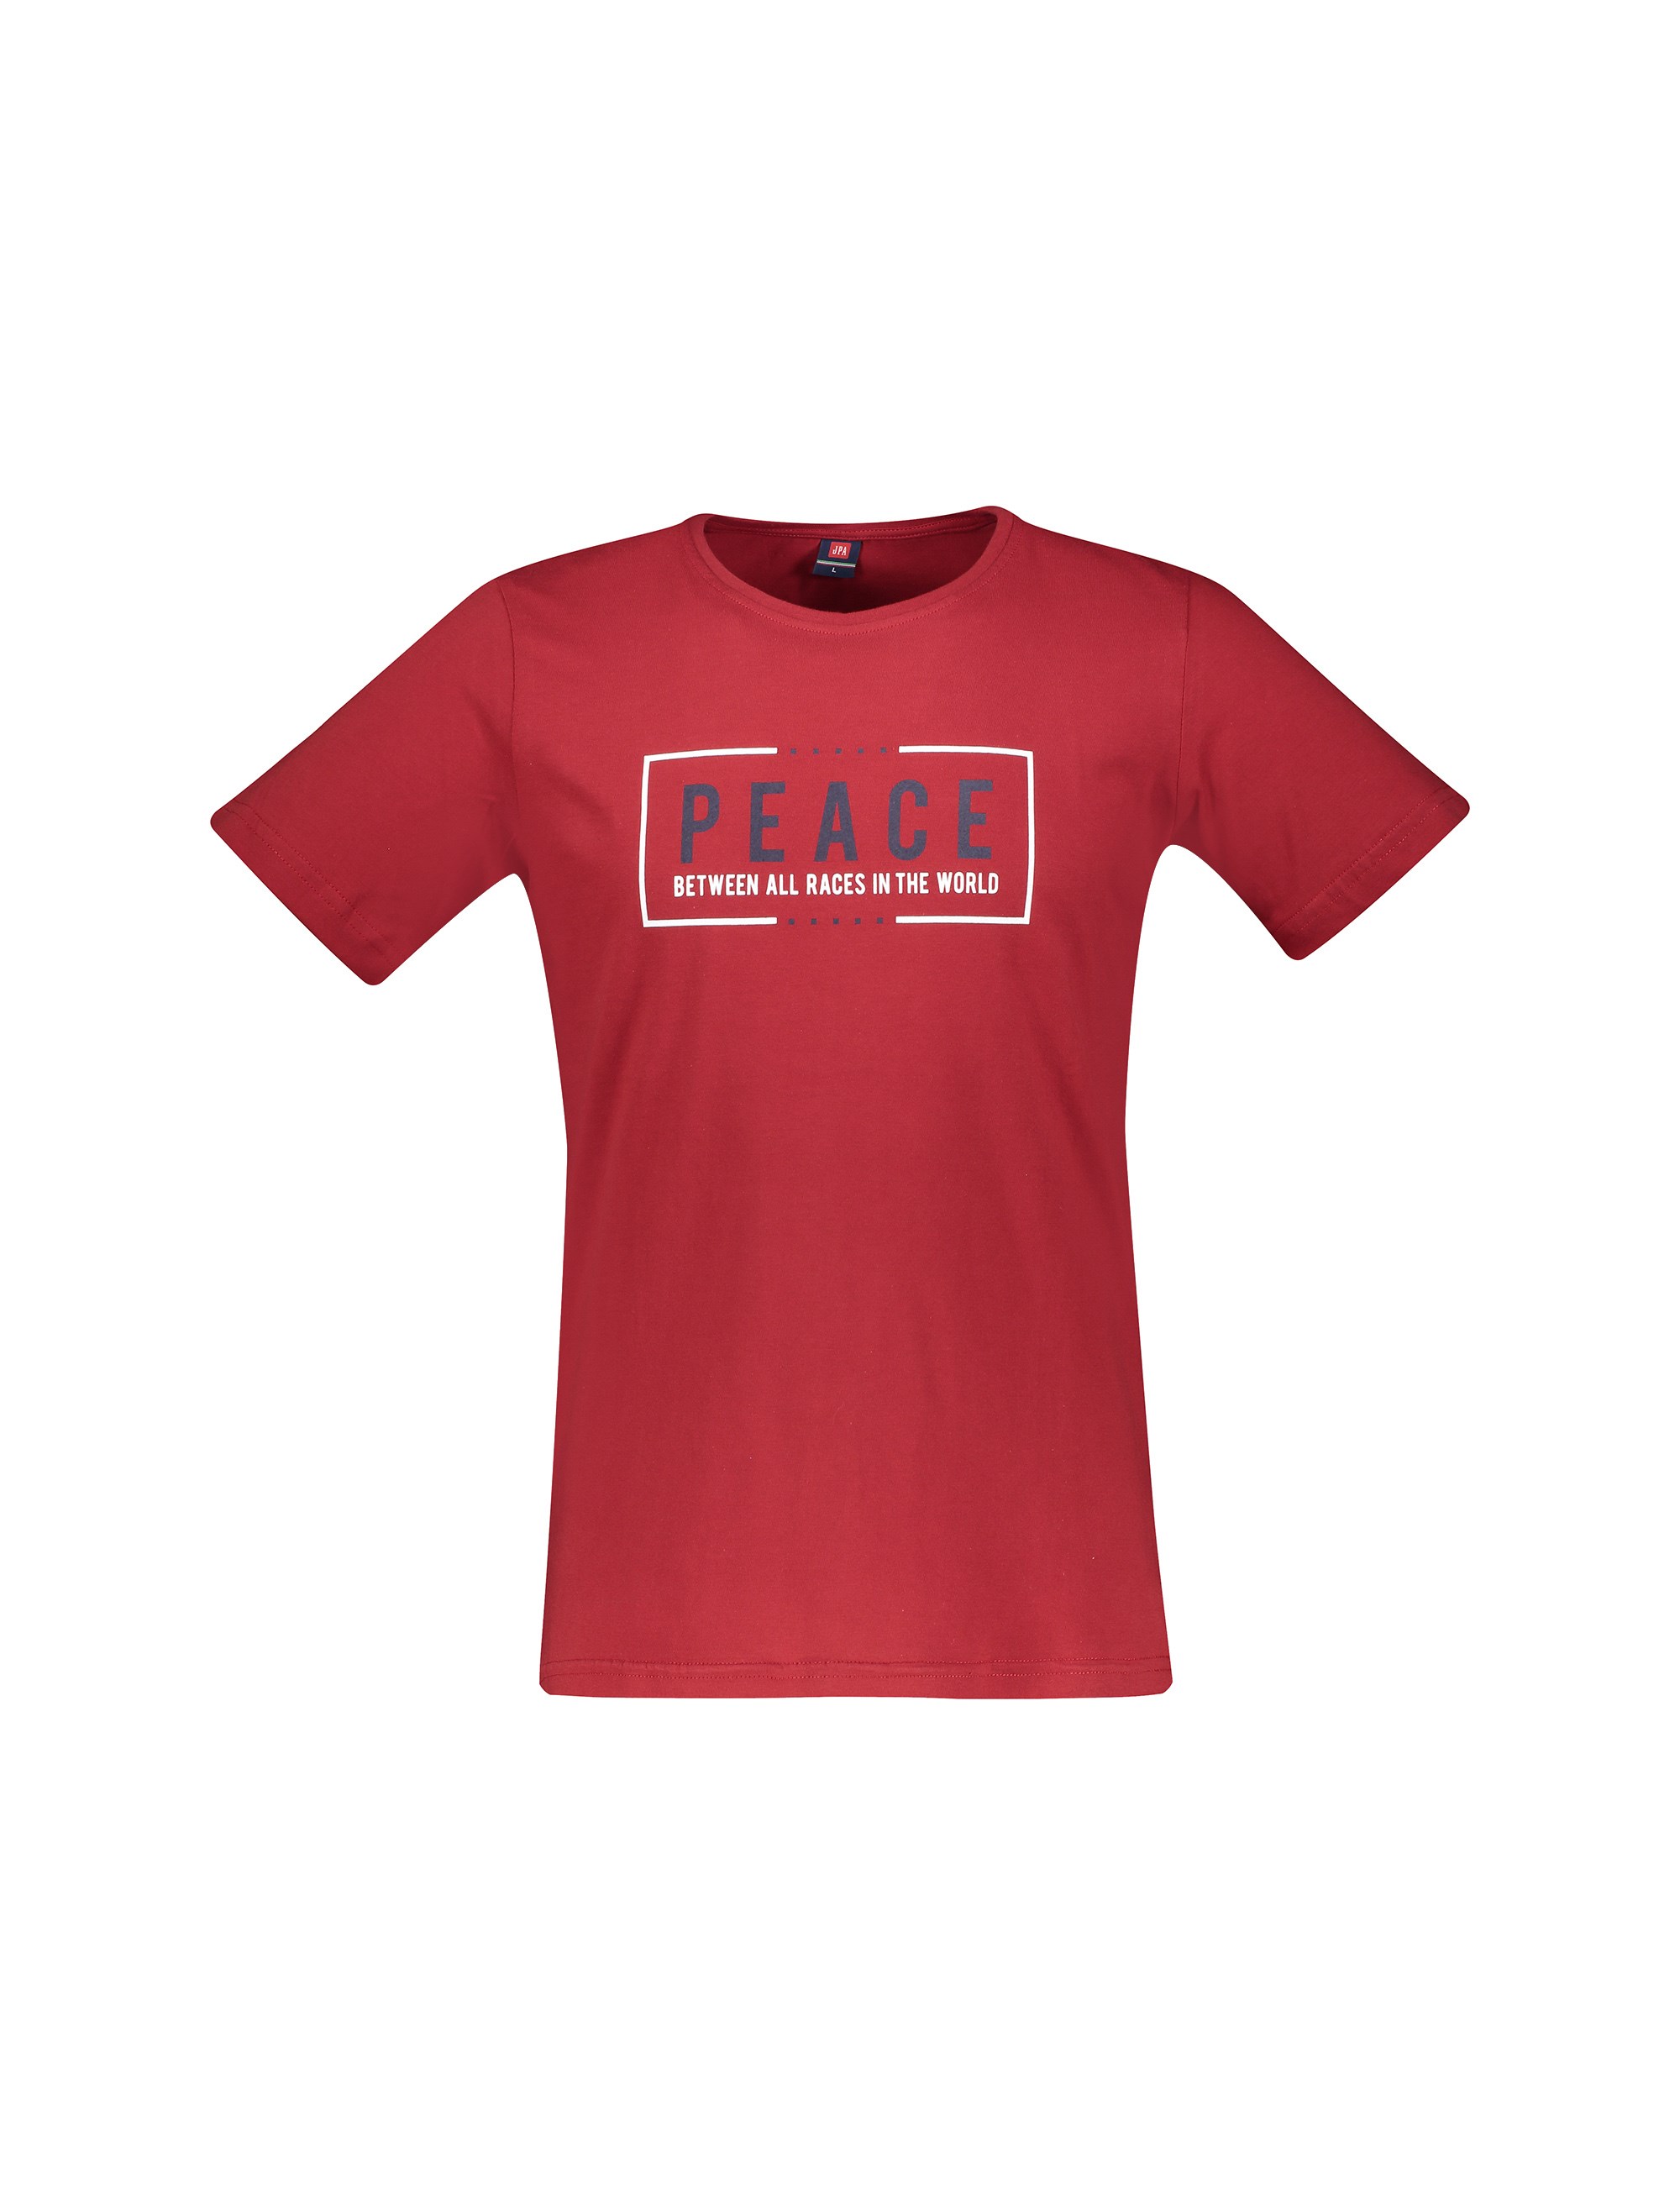 تی شرت و شلوار نخی راحتی مردانه - جامه پوش آرا - قرمز - 1